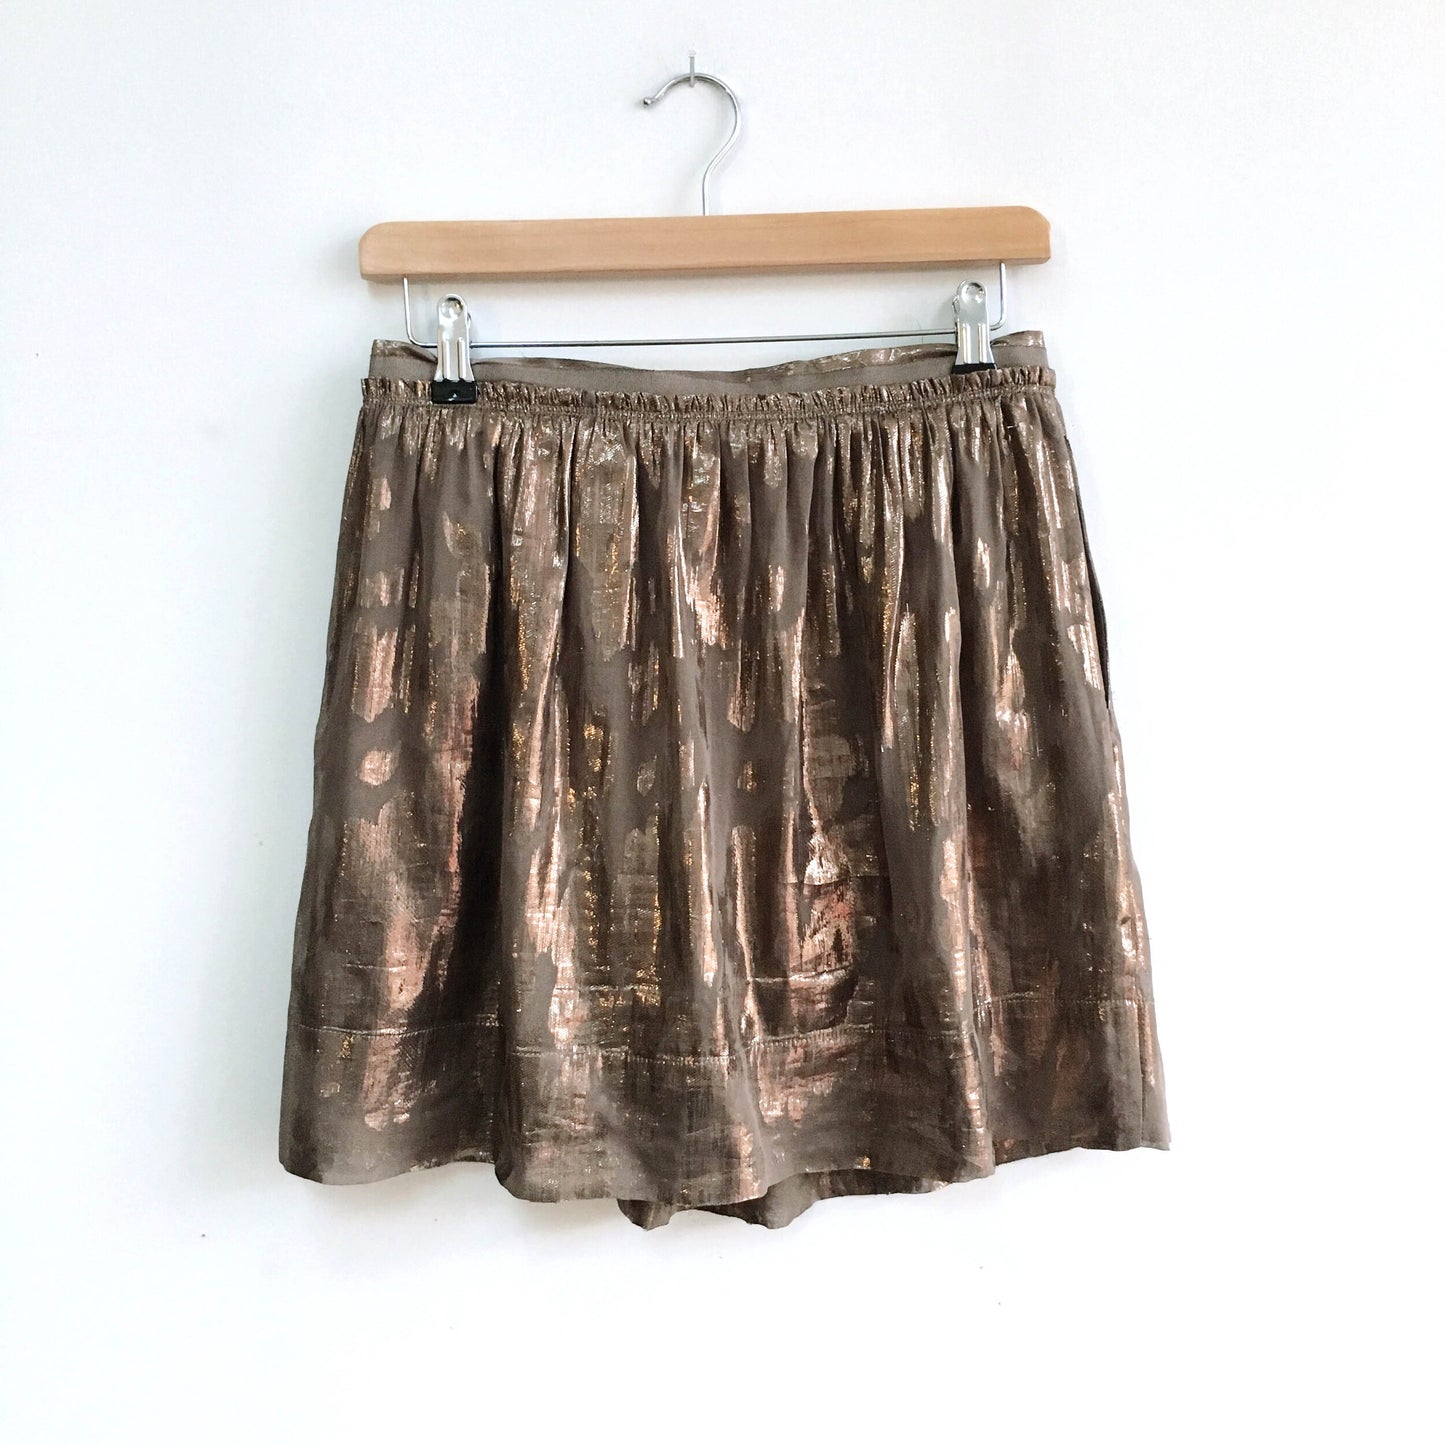 Club Monaco Metallic Mini Skirt - size 4